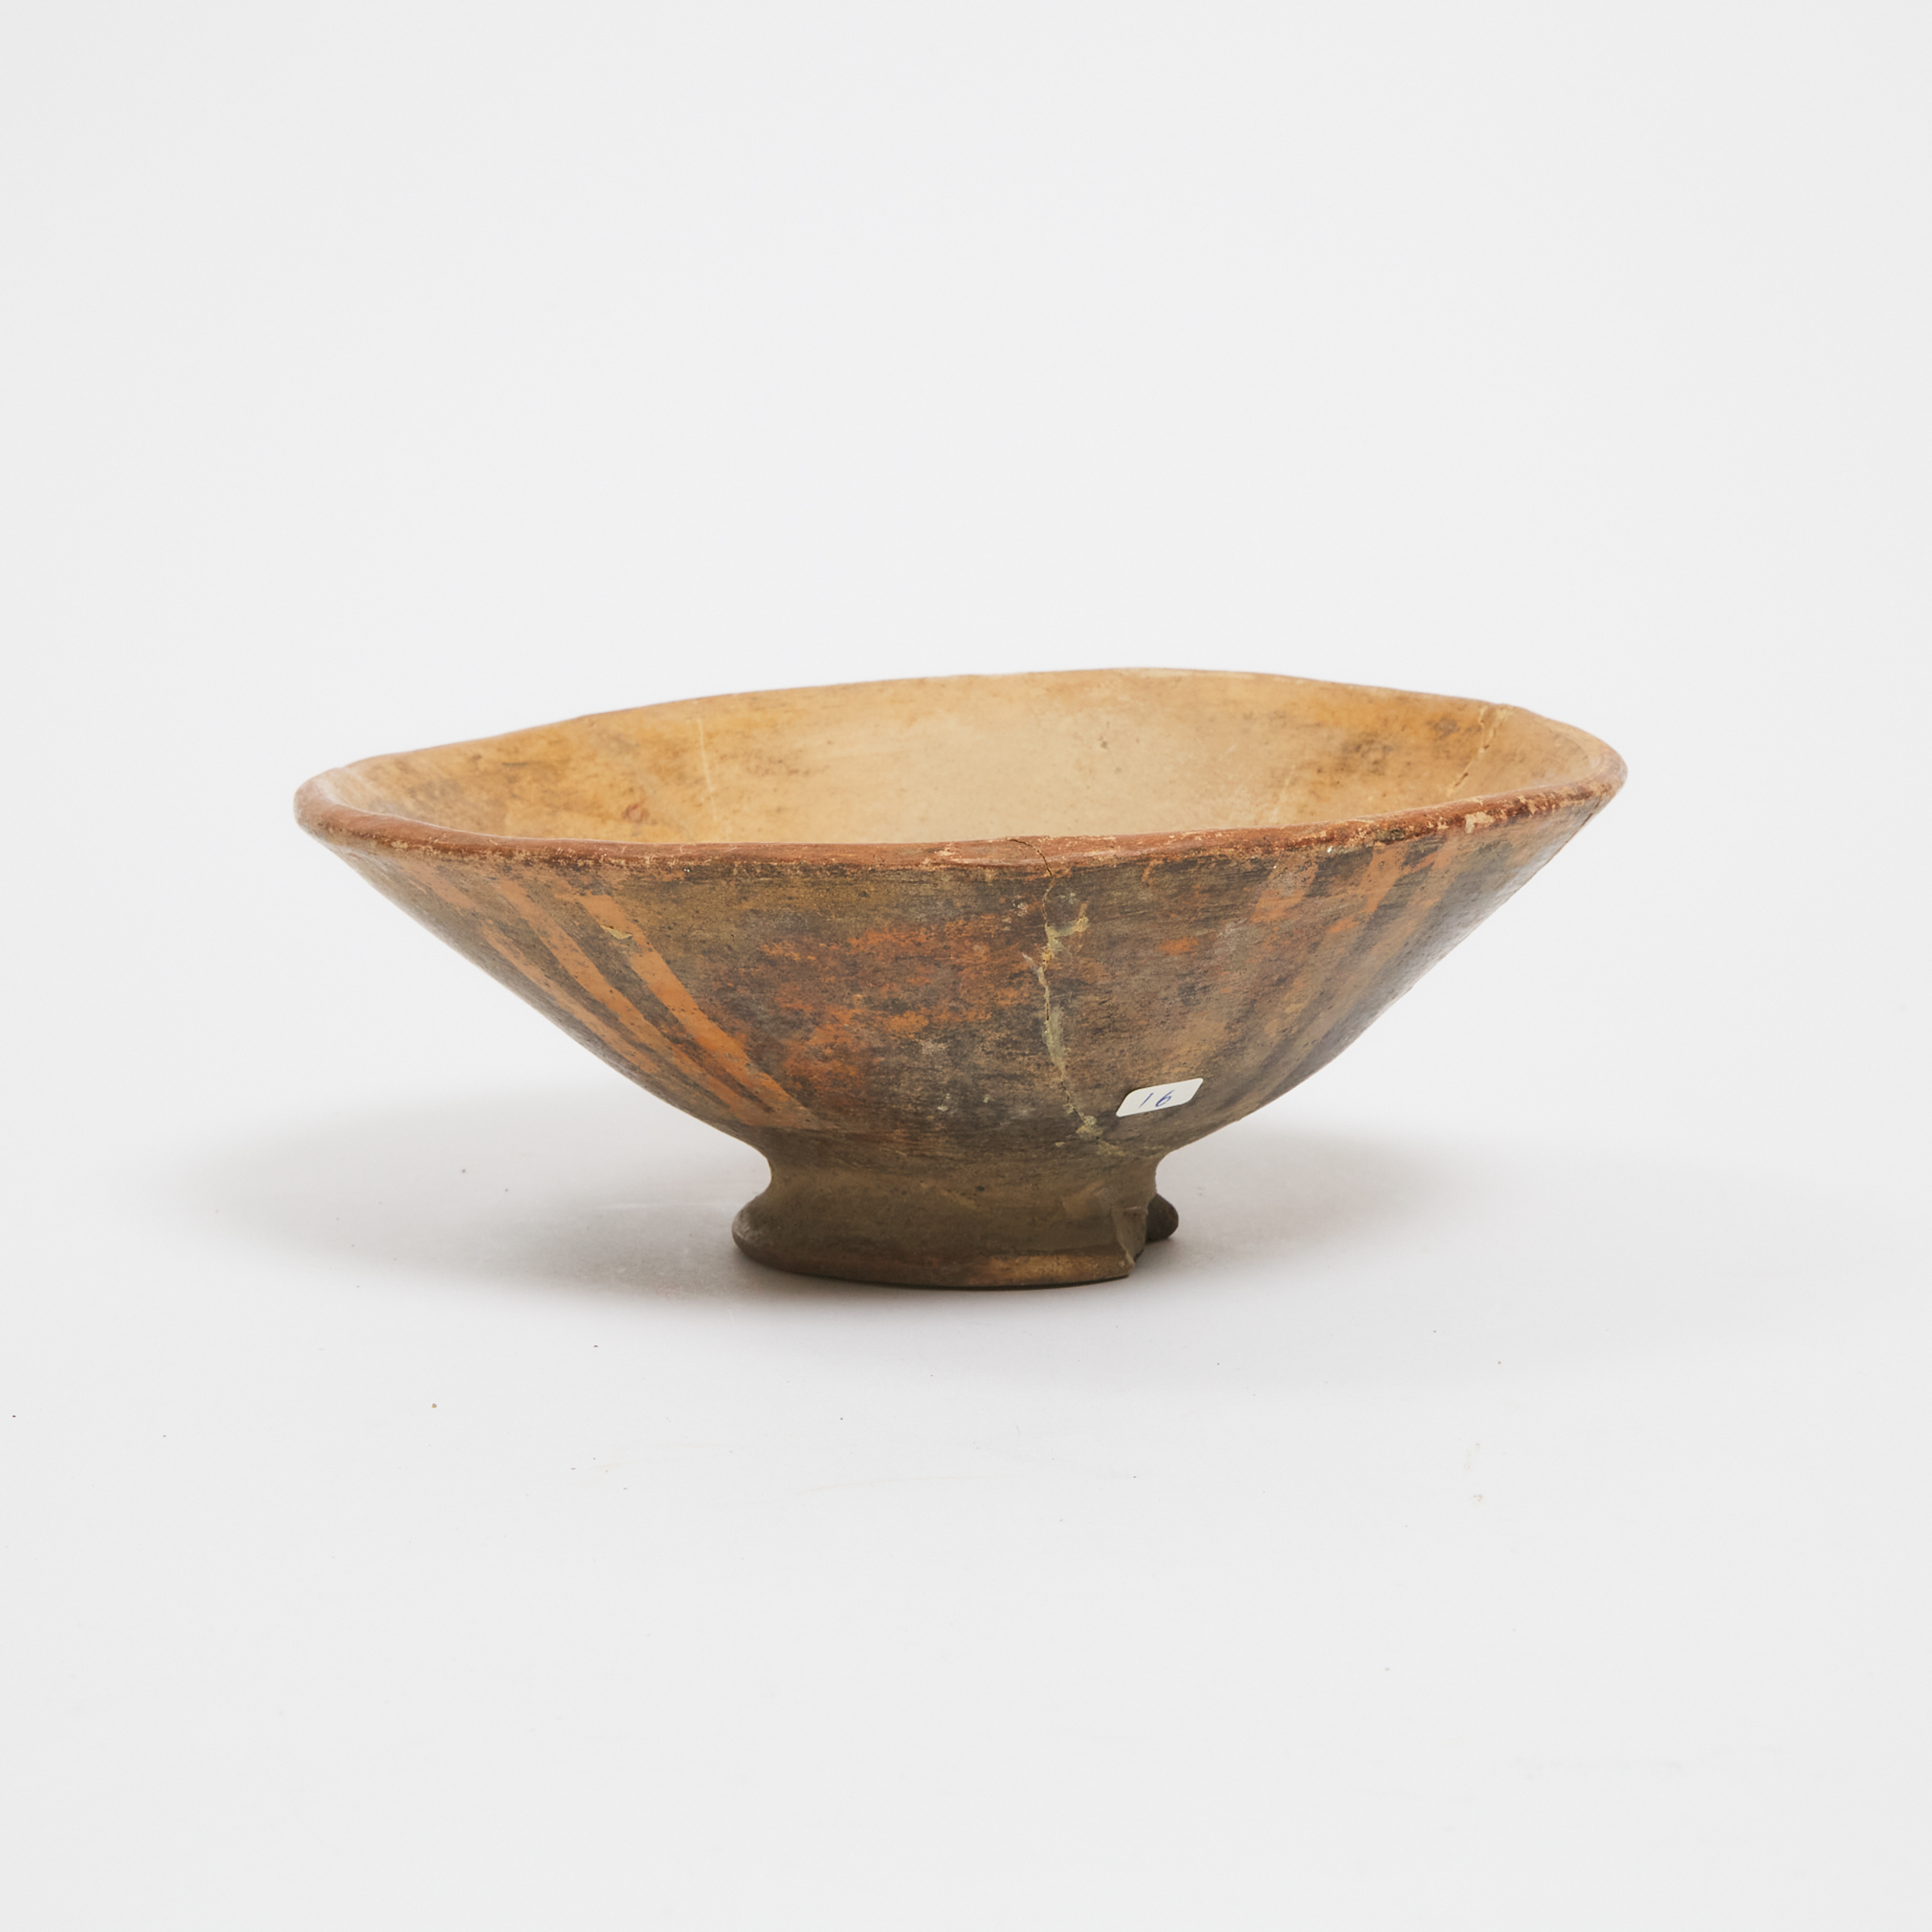 Narino Pottery Footed Bowl, 800-1500